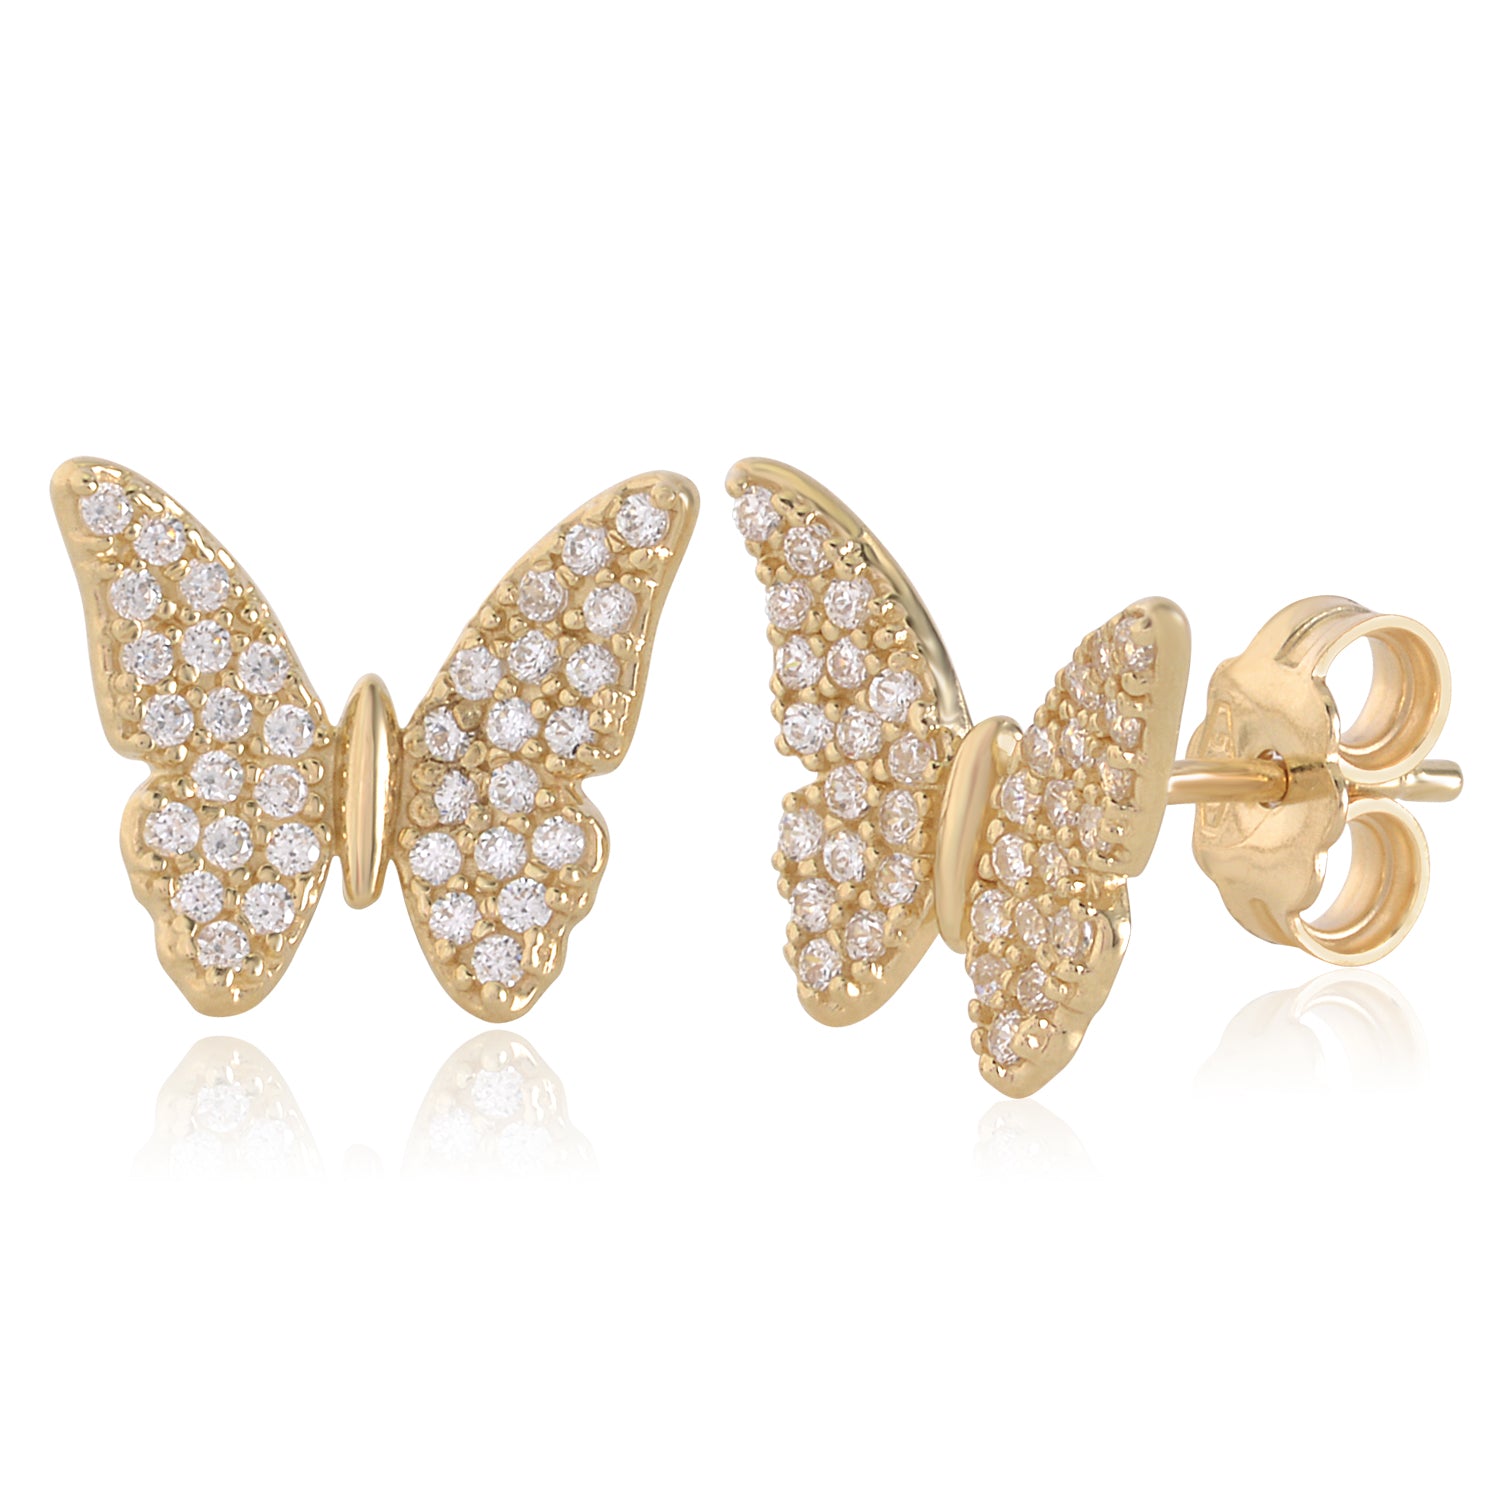 The Pretty Butterfly Earrings For Kids | BlueStone.com